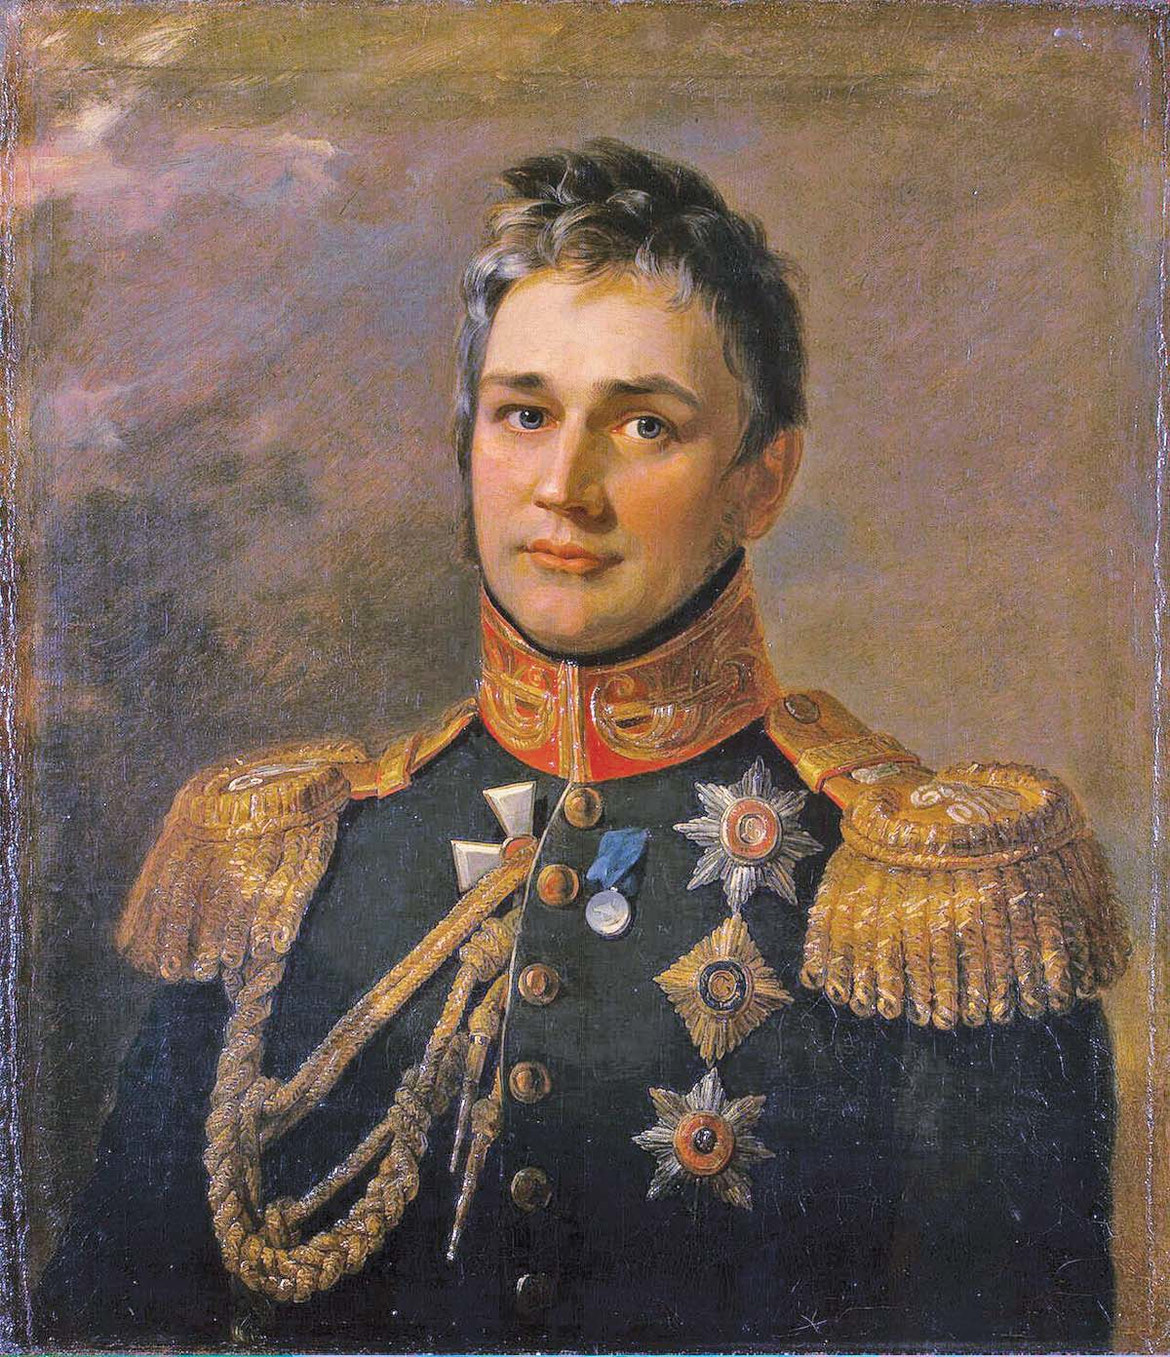 Парадный портрет М.С. Воронцова в Военной галерее героев 1812 г. в Зимнем дворце Санкт-Петербурга